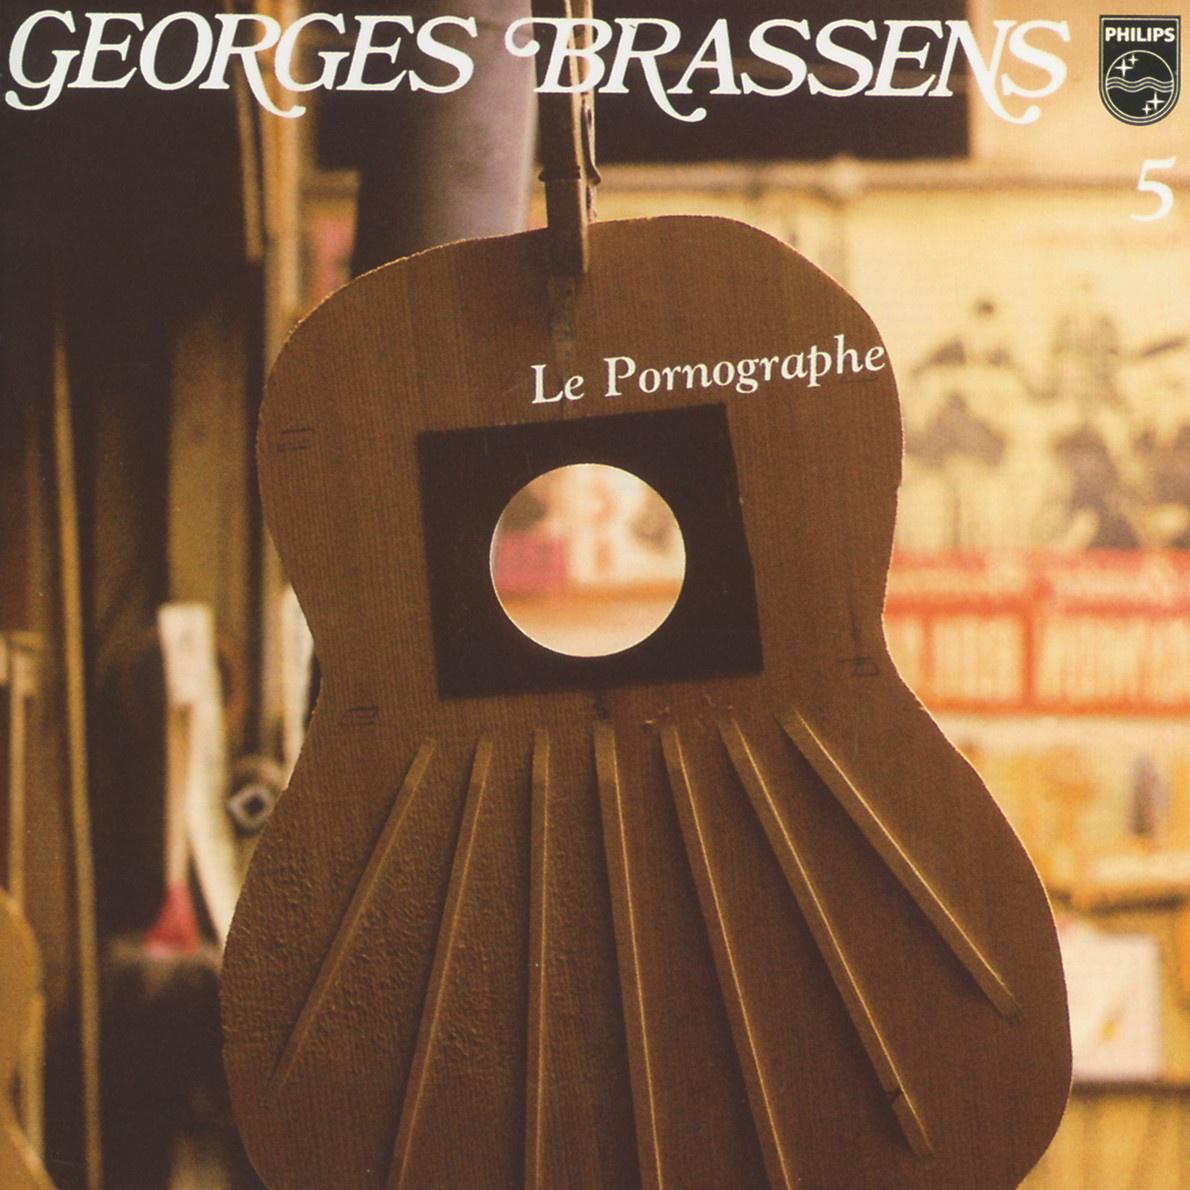 Georges Brassens - Le mecreant